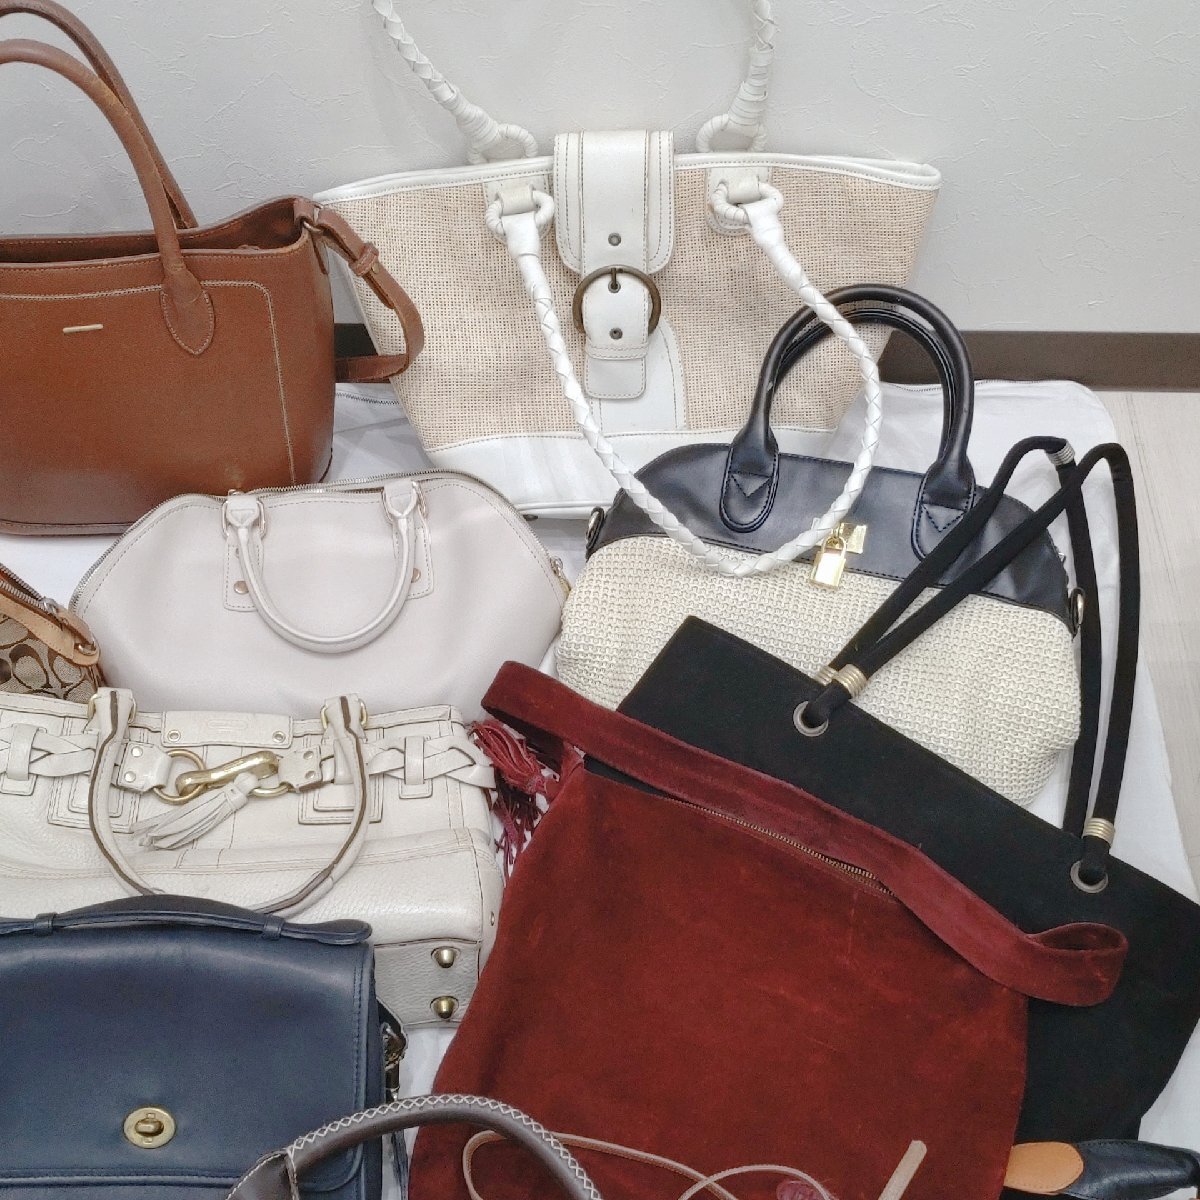 (A) женский сумка много продажа комплектом COACH/Ferragamo/Samantha др. ручная сумочка сумка на плечо большая сумка кожа ткань 